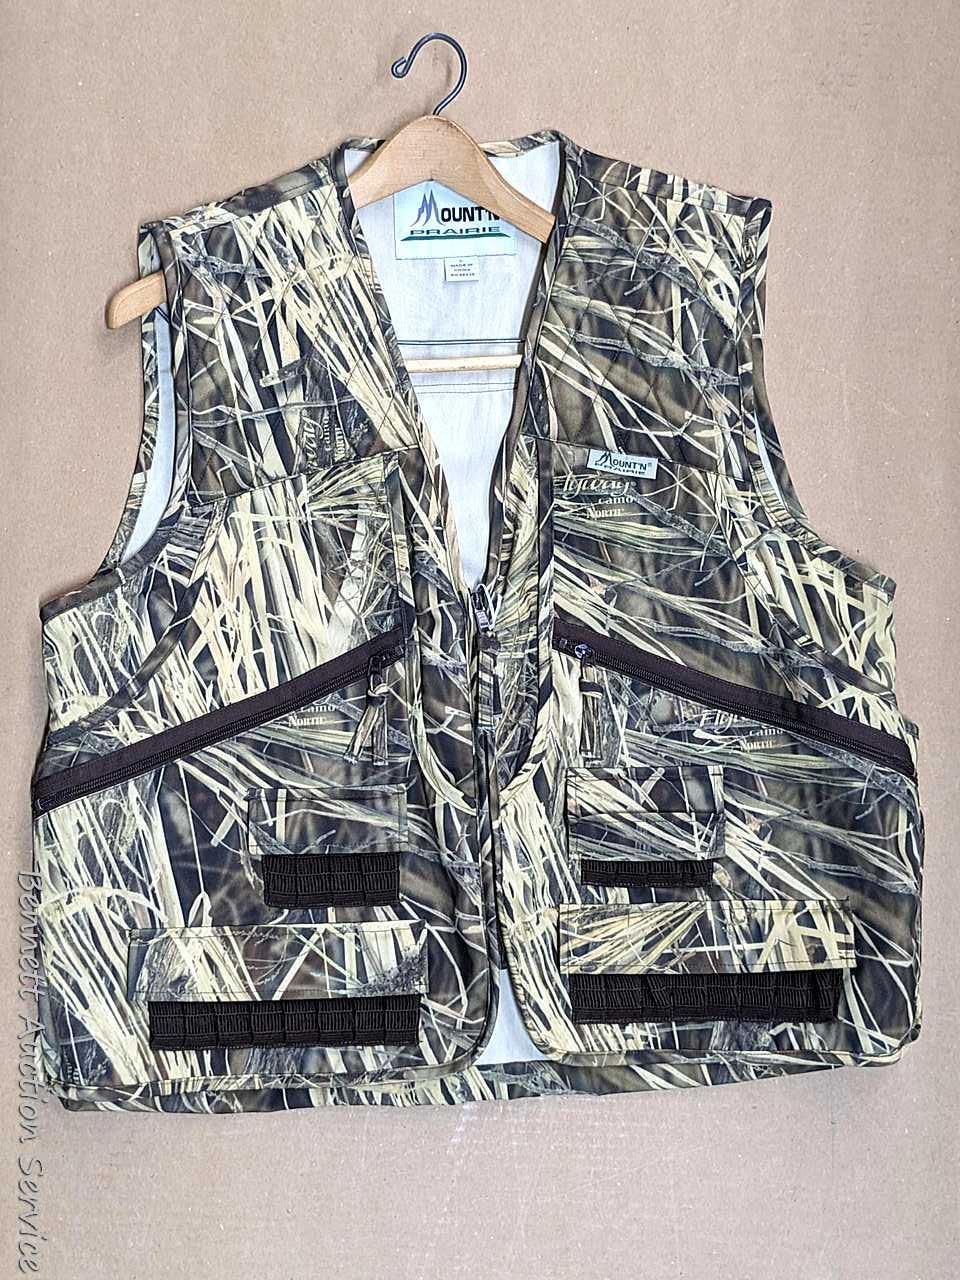 Mount'n Prairie brand Flyway Camo hunting vest